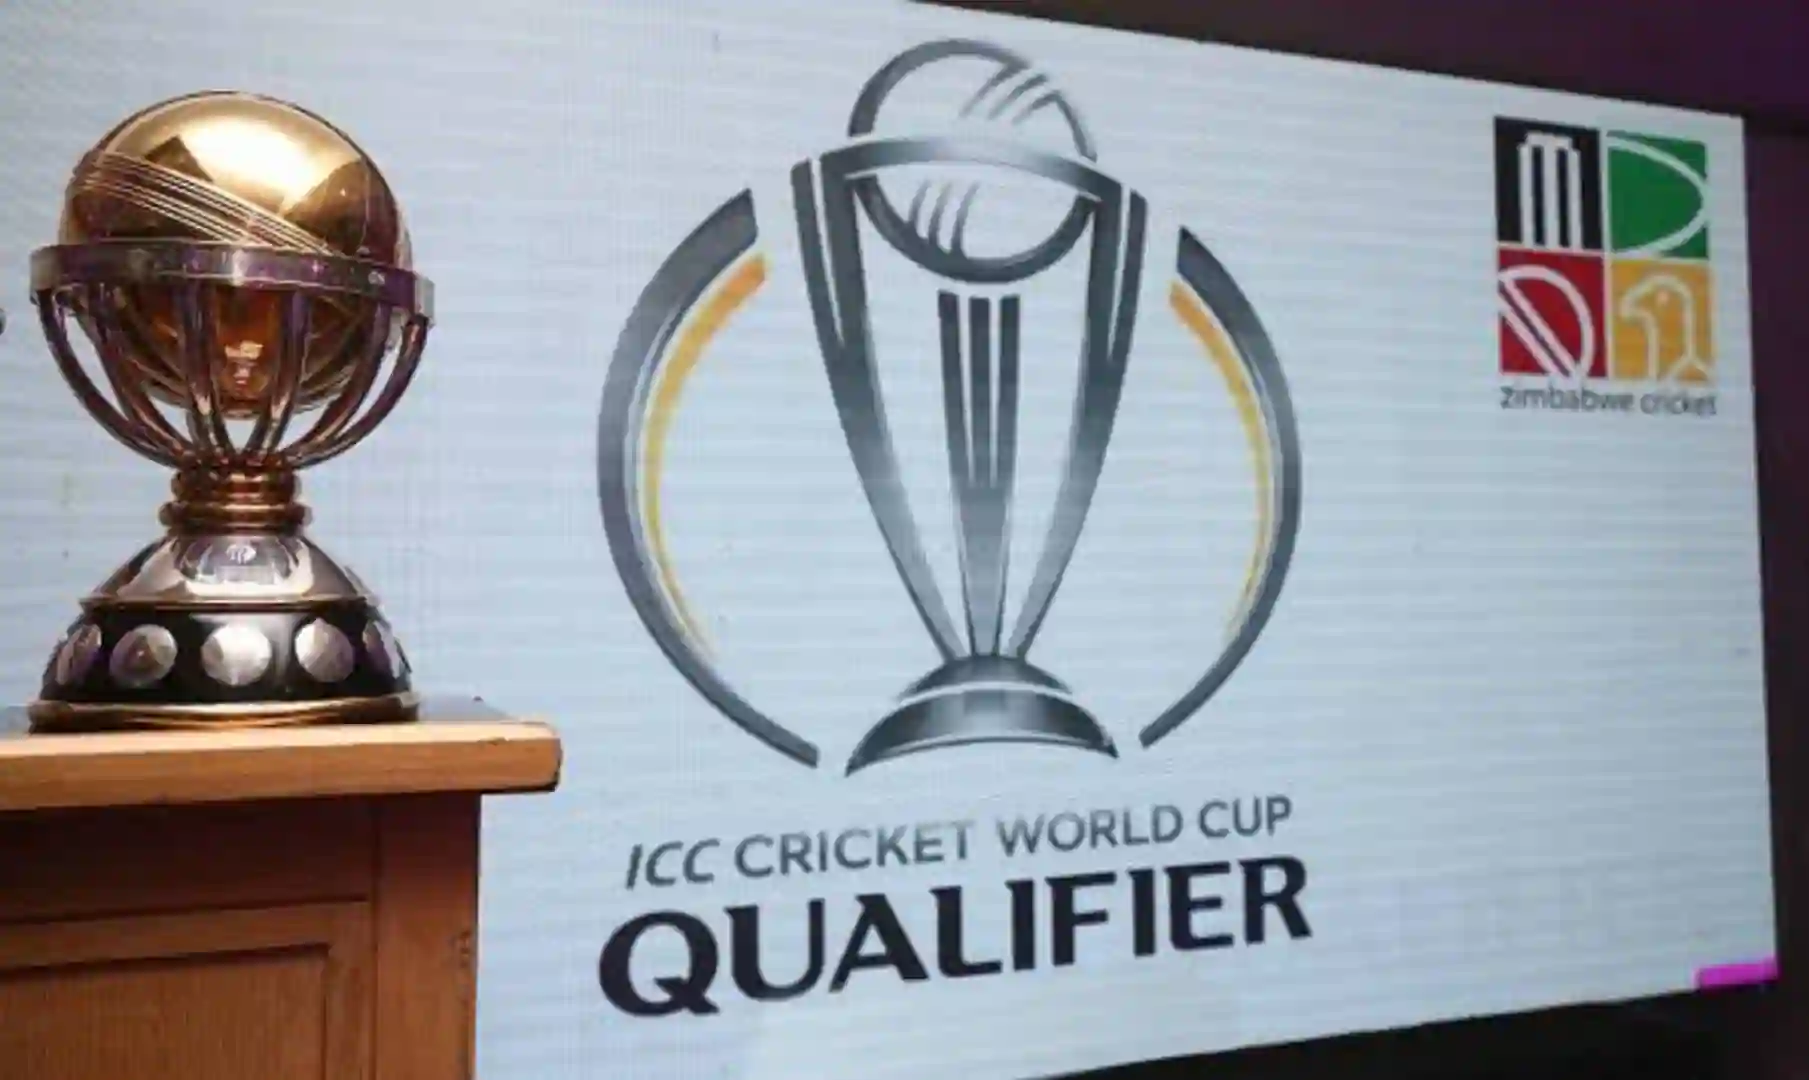 ODI WC Qualifiers